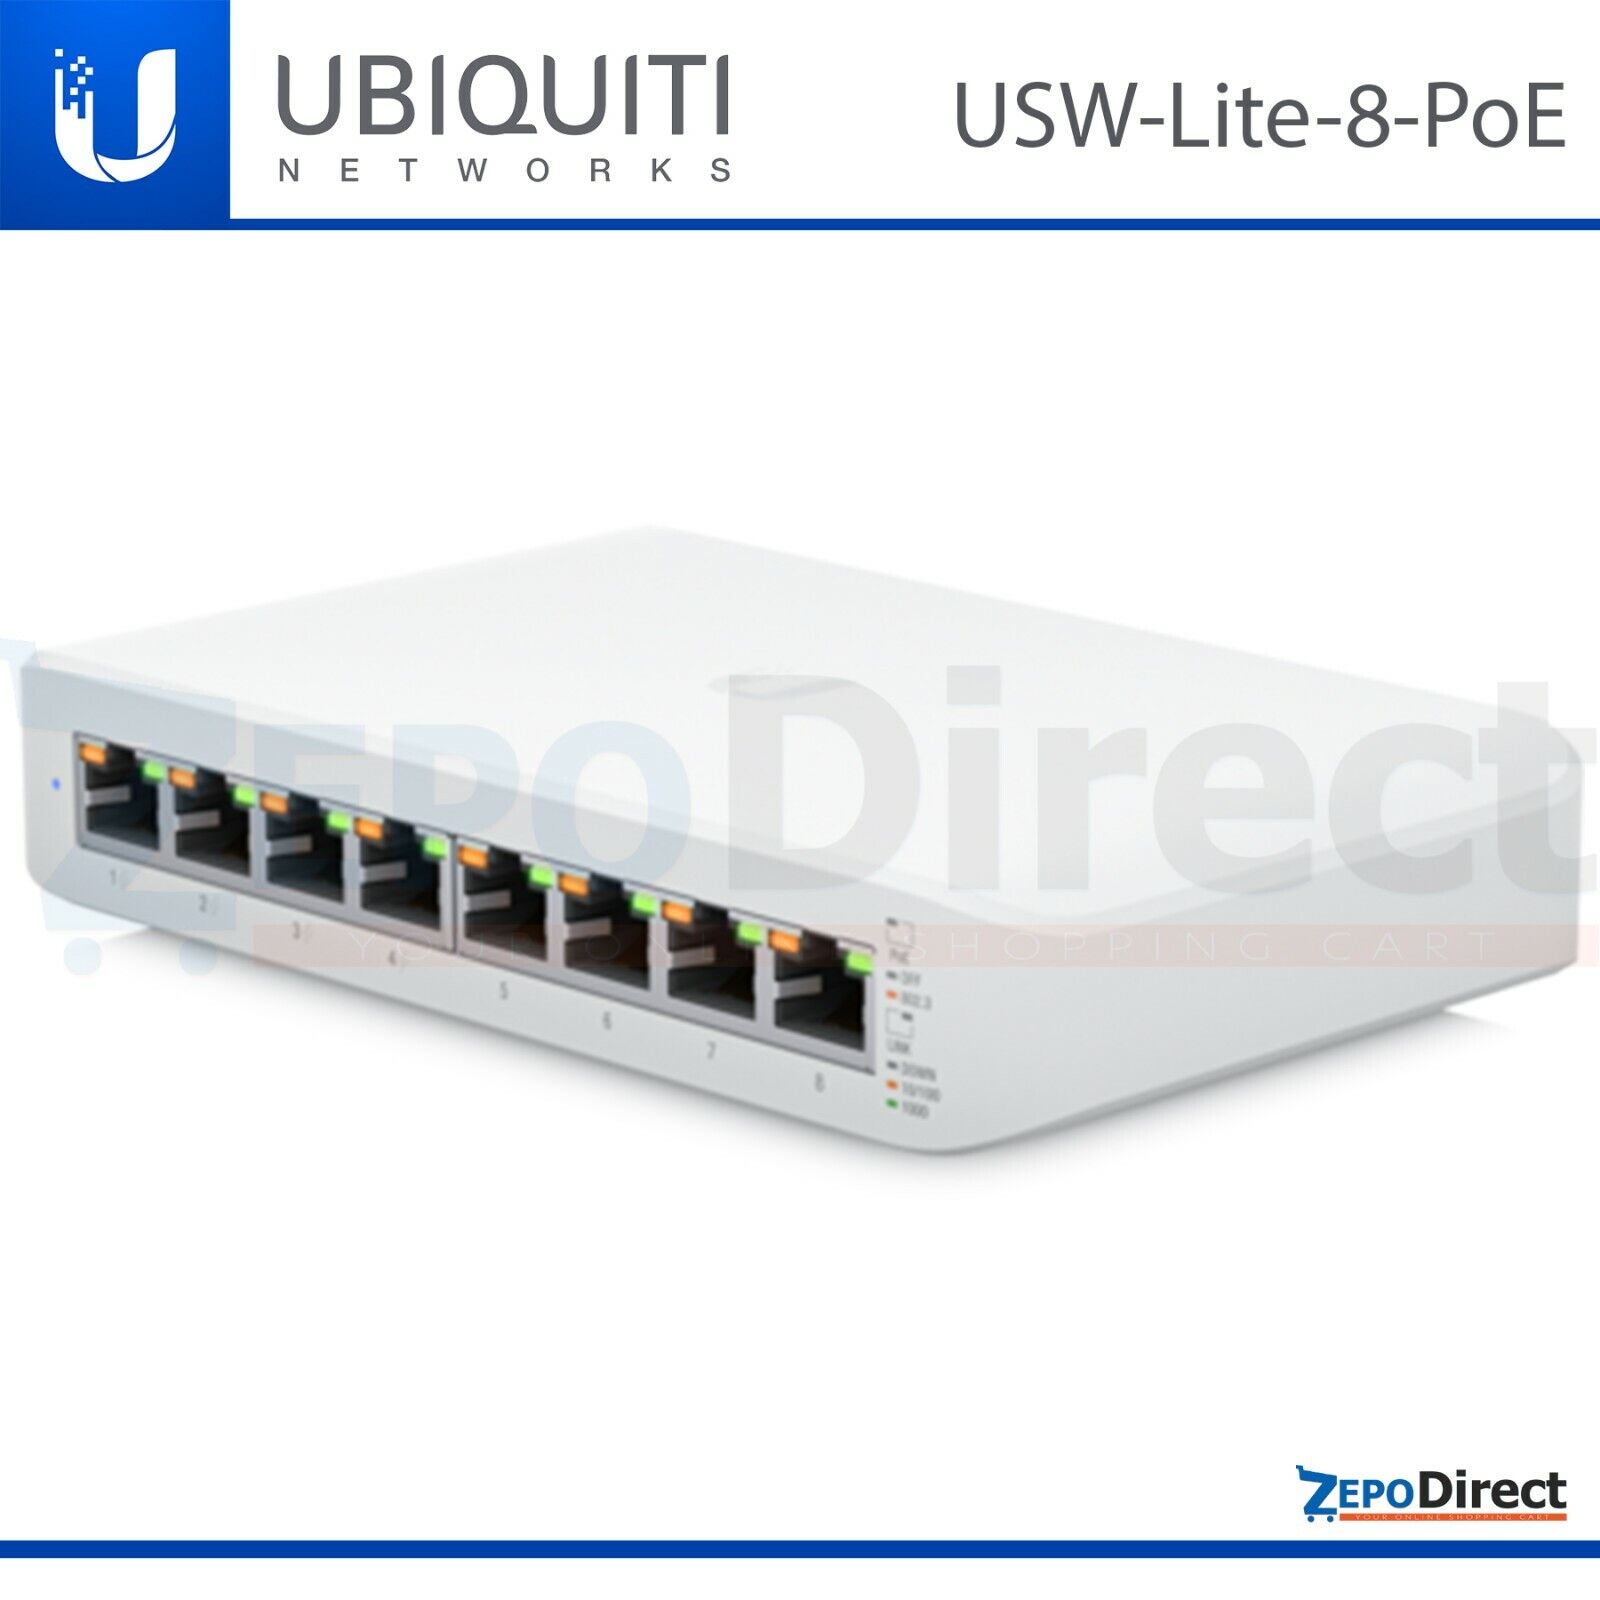 Ubiquiti Networks UniFi Managed Layer 2 Switch Lite 8 PoE 60W, USW-Lite-8-PoE